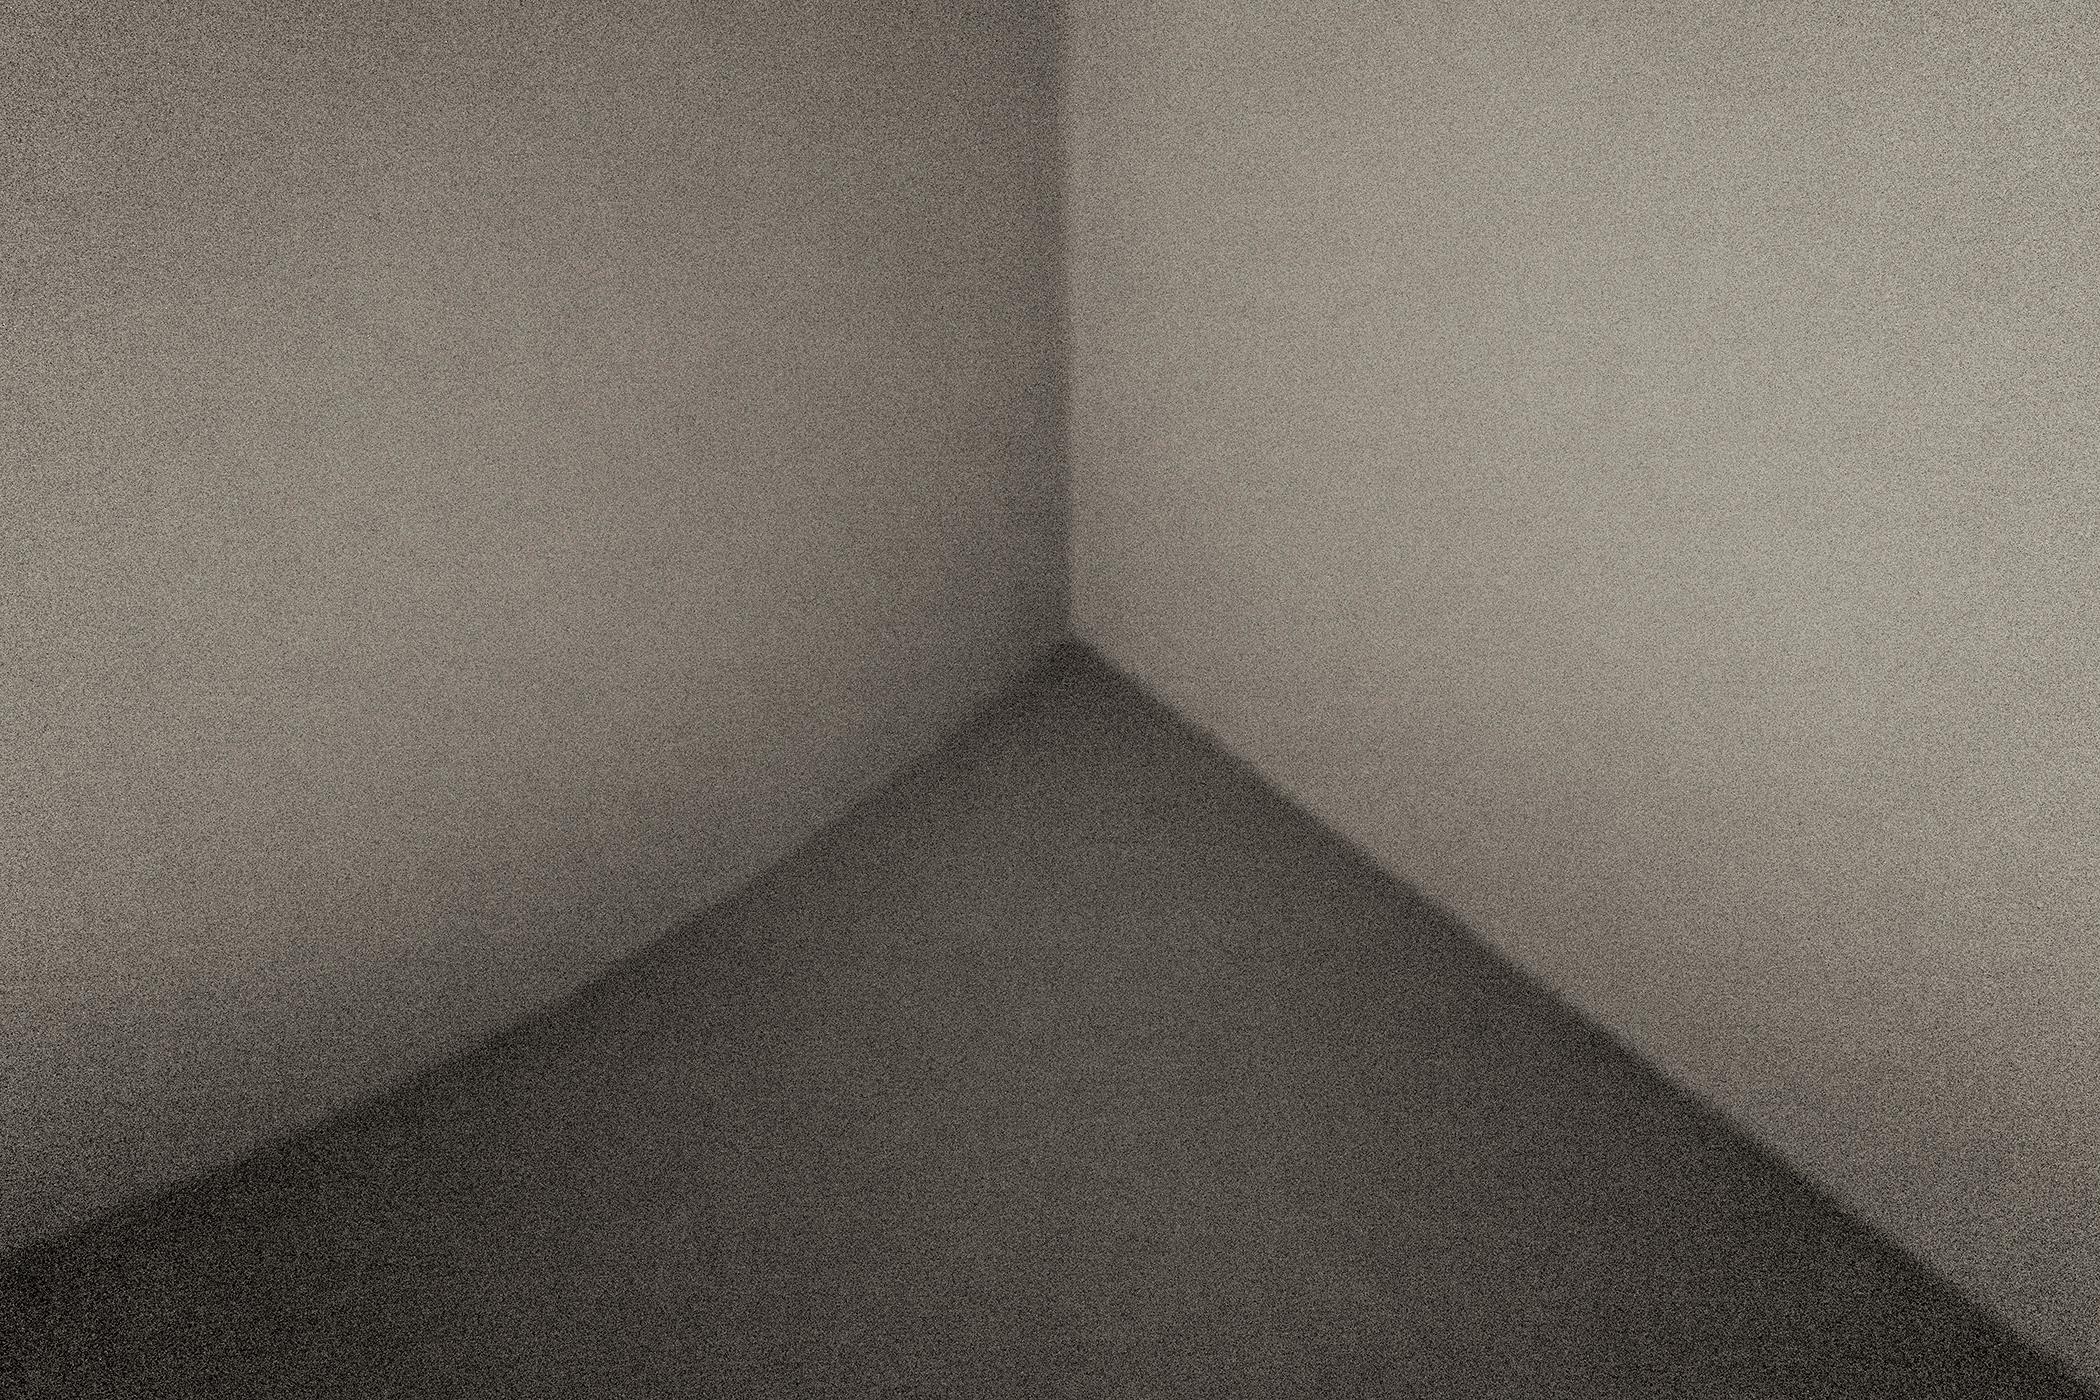 Kenji Aoki Black and White Photograph - Corner No. 01 at the Guggenheim Museum